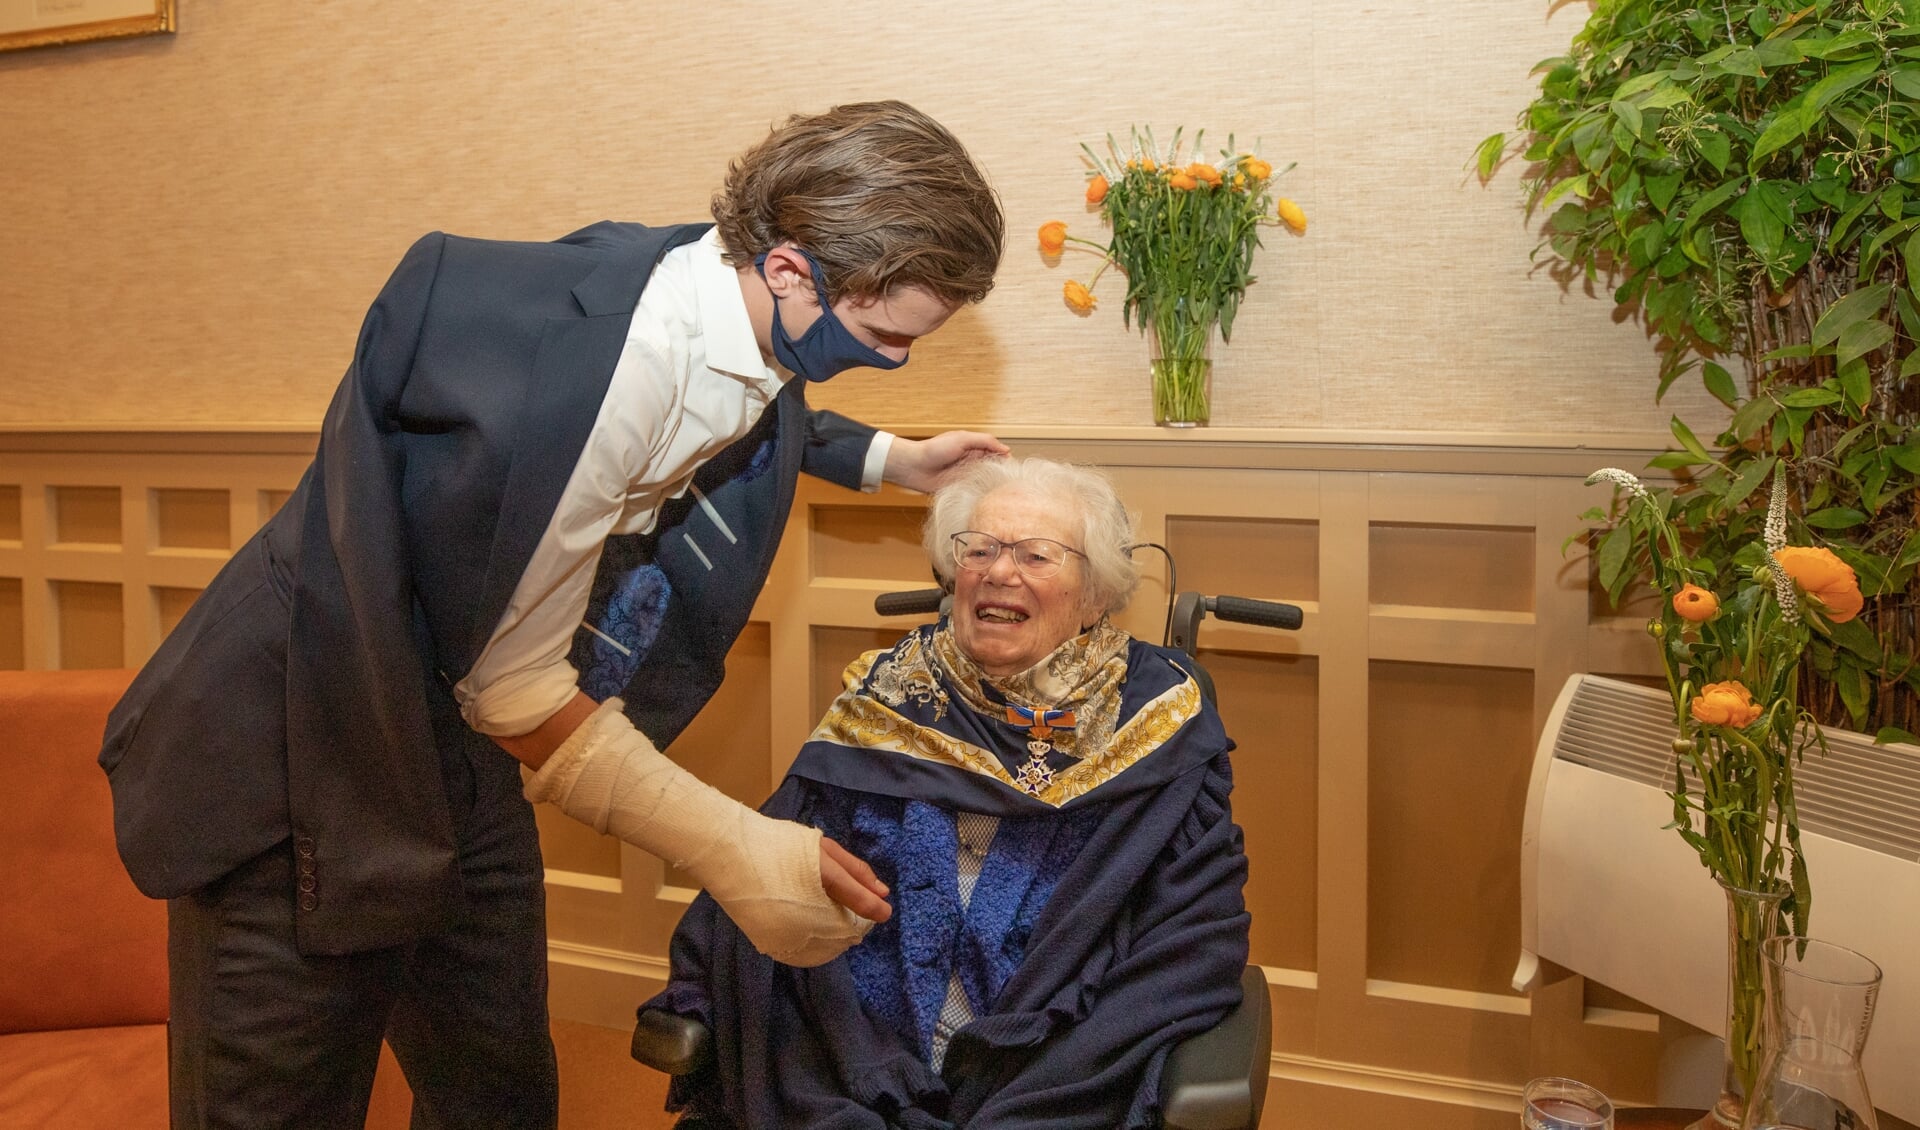 Kleinzoon Zoran overhandigt de koninklijke onderscheiding aan zijn oma. 